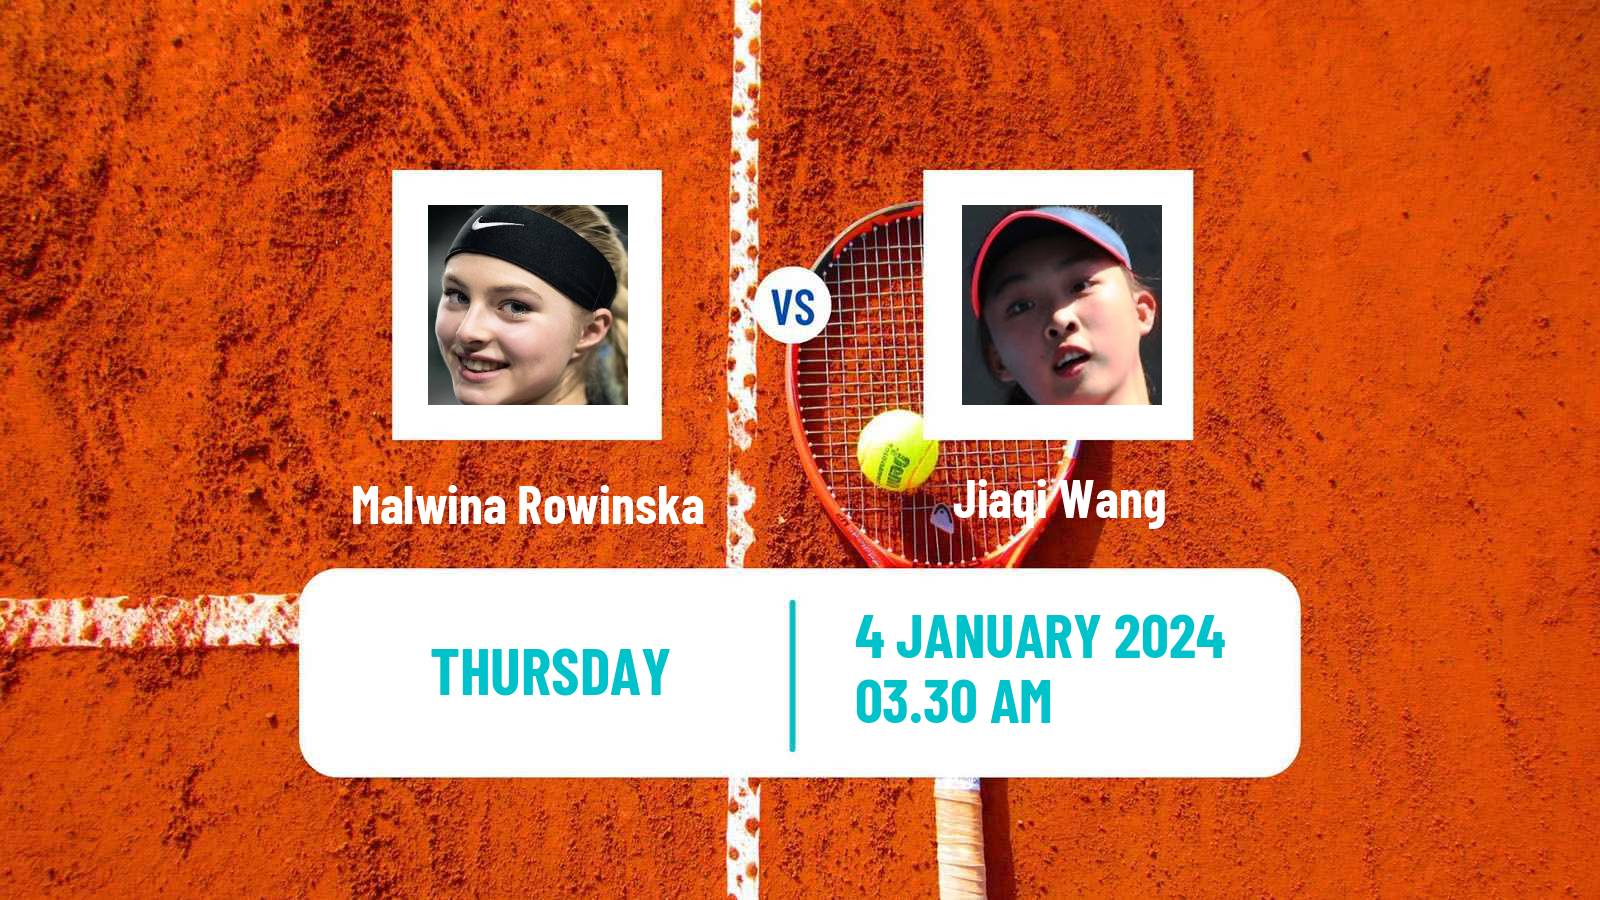 Tennis ITF W15 Monastir Women Malwina Rowinska - Jiaqi Wang